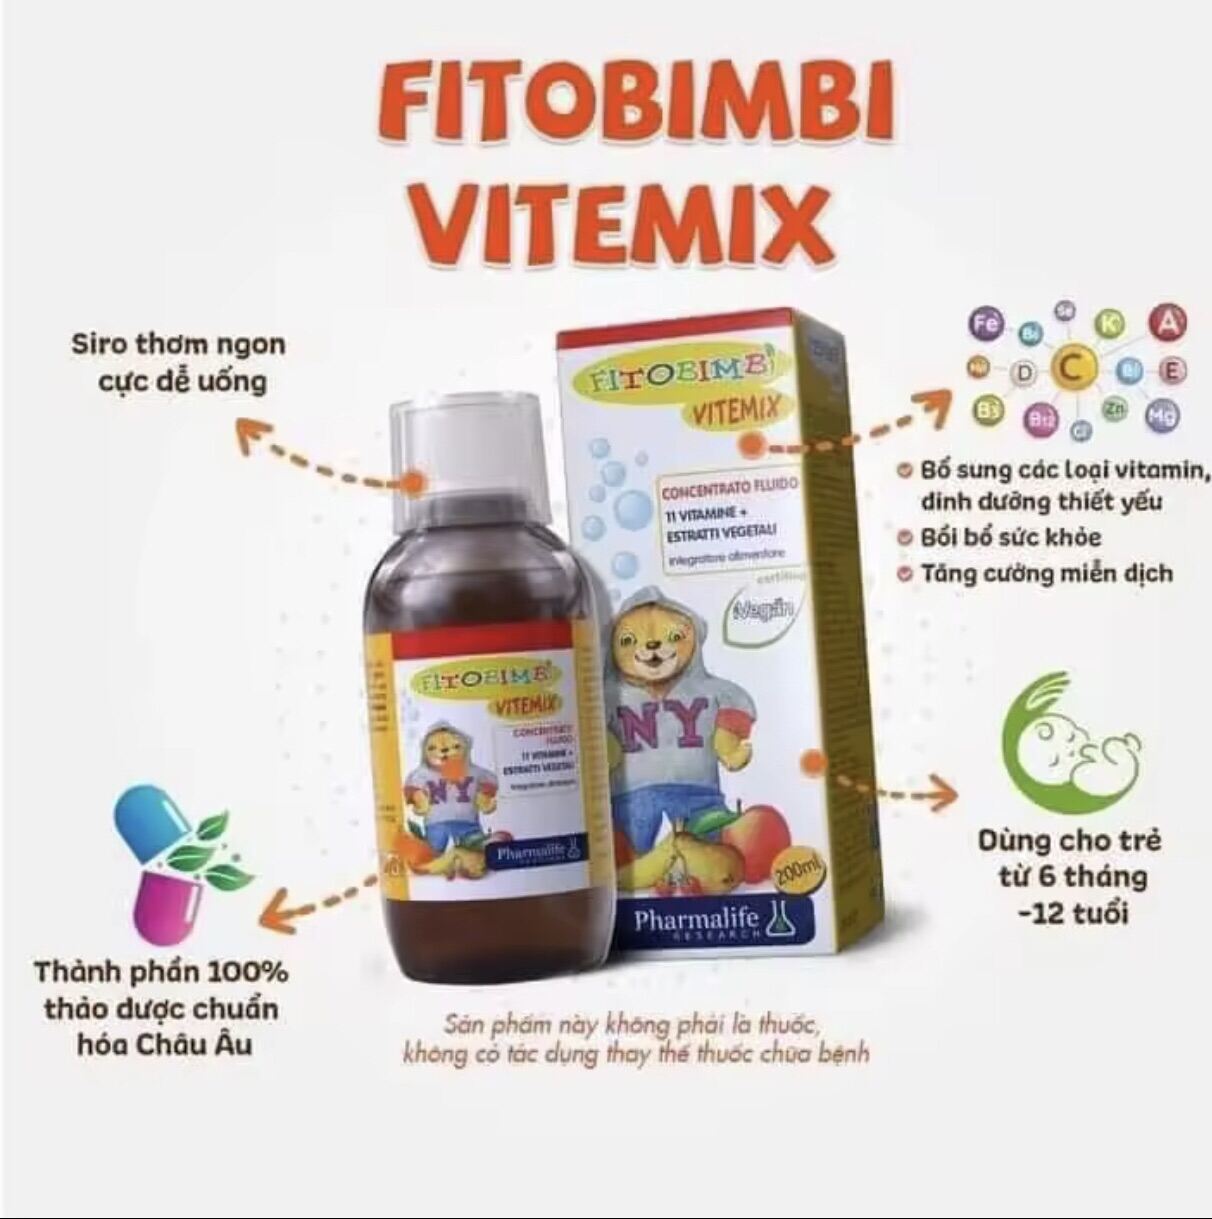 Fitobimbi Vitemix-Bổ sung các Vitamin Canli và khoáng chất cho bé